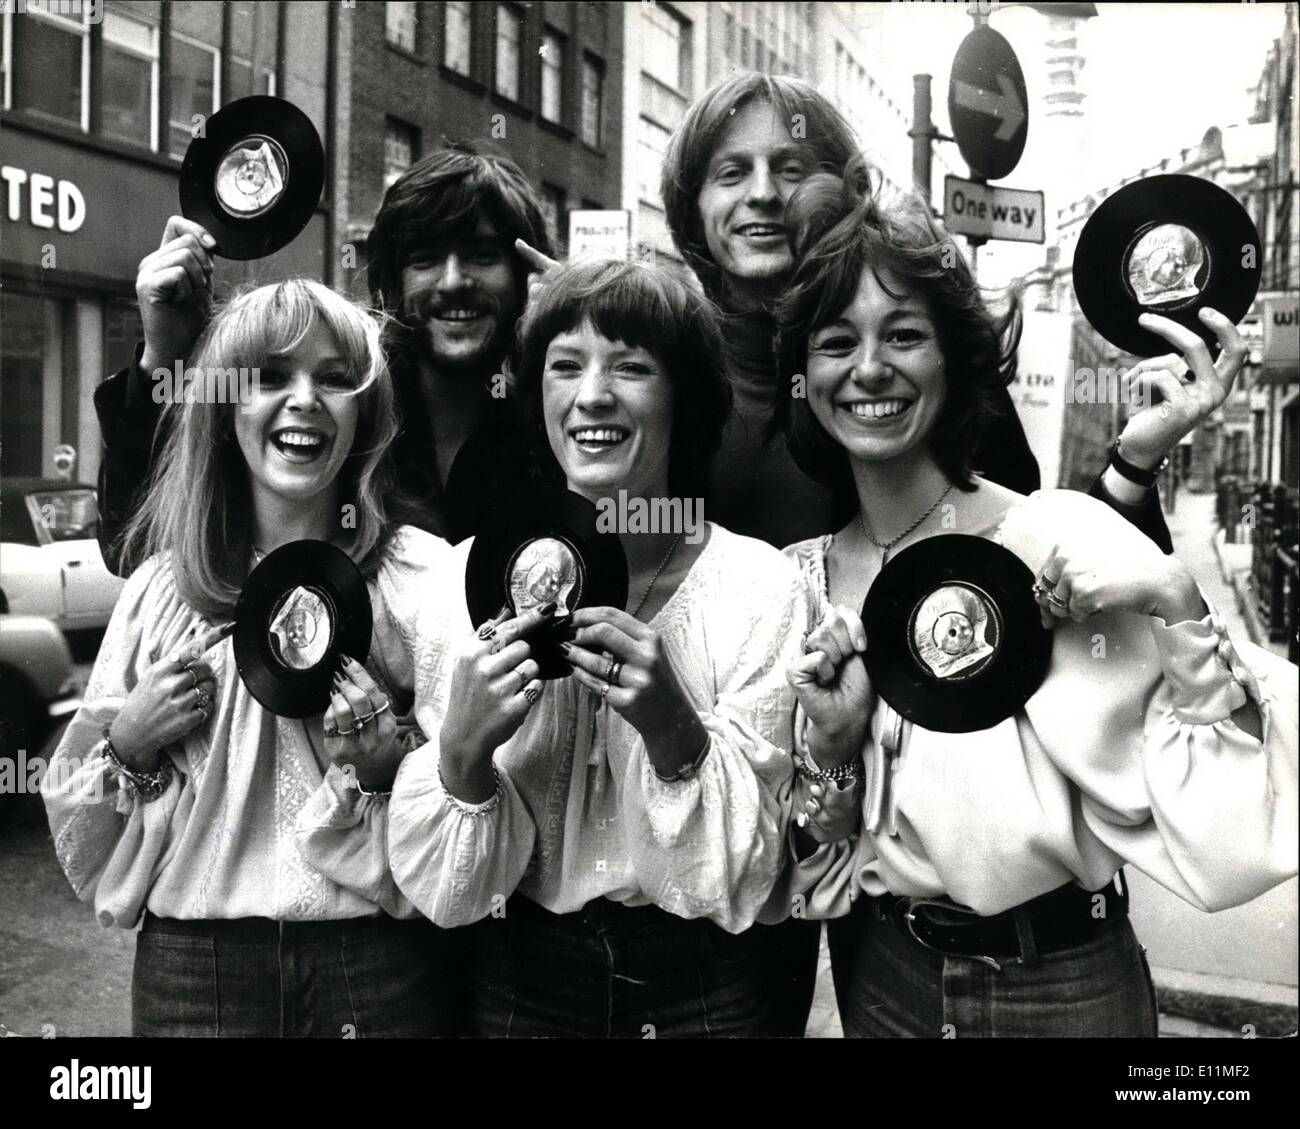 Febbraio 02, 1979 - ''Riflessioni'' lanciare il loro nuovo singolo ''ogni volta che mi trovo lontano da te'': ''Riflessioni", uno di Gran Bretagna superiore armonia gruppo hanno lanciato il loro nuovo singolo questa settimana chiamato ''ogni volta che mi trovo lontano da te", il gruppo che hanno iniziato la loro carriera come 'Splinter'' salì contro un problema quando un ex-Beatles George Harrison ha scelto un gruppo chiamato scheggia per lanciare il suo nuovo Dark Horse etichetta discografica Foto Stock